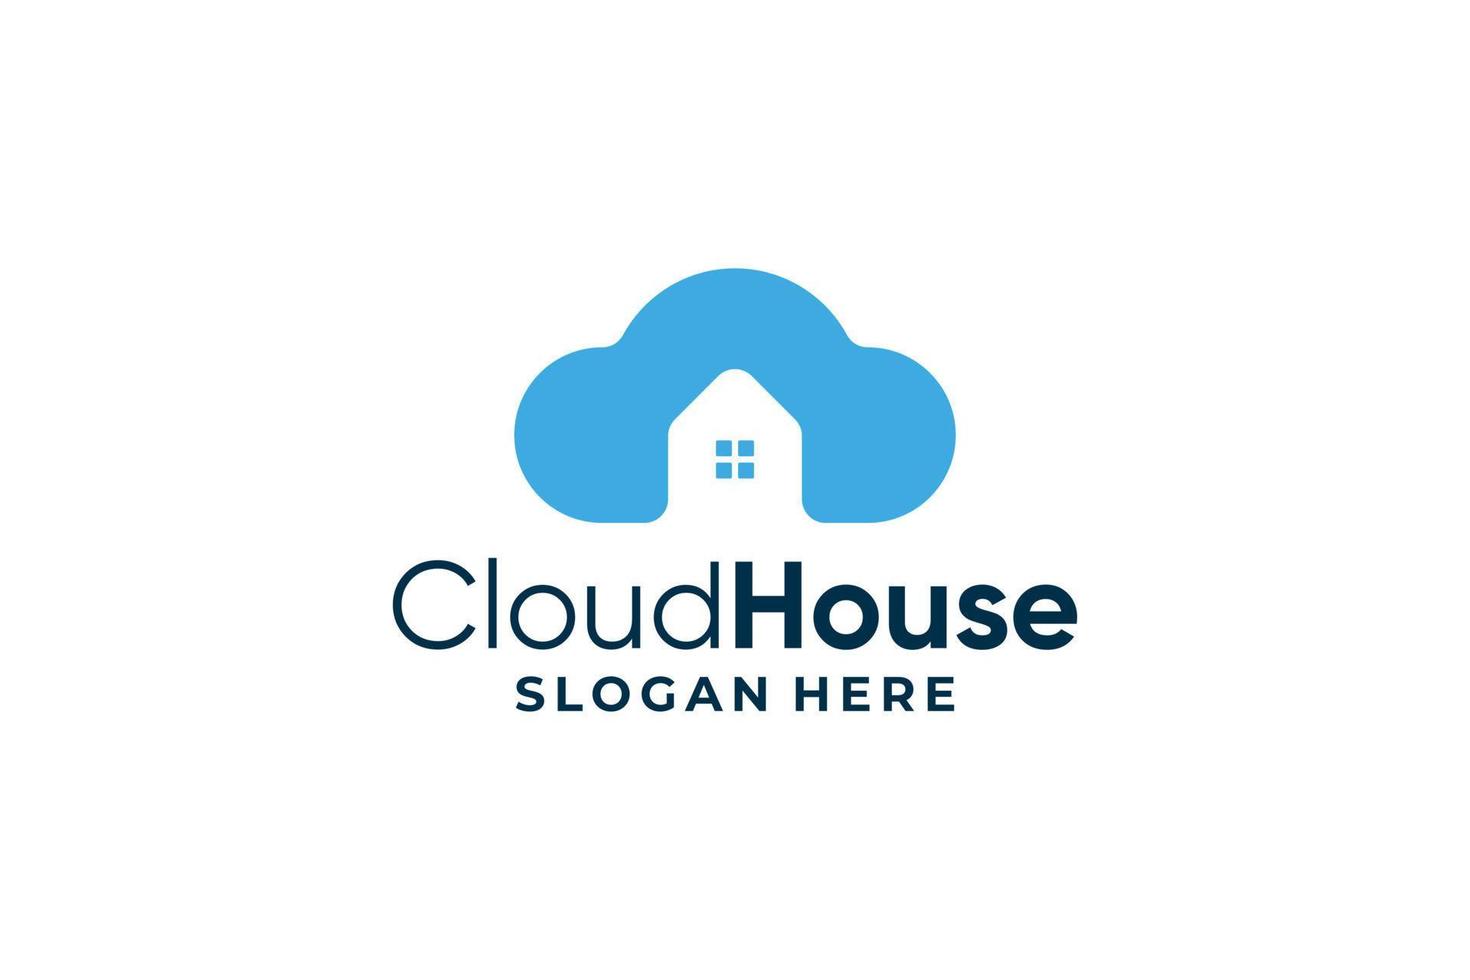 Cloud house logo vector design